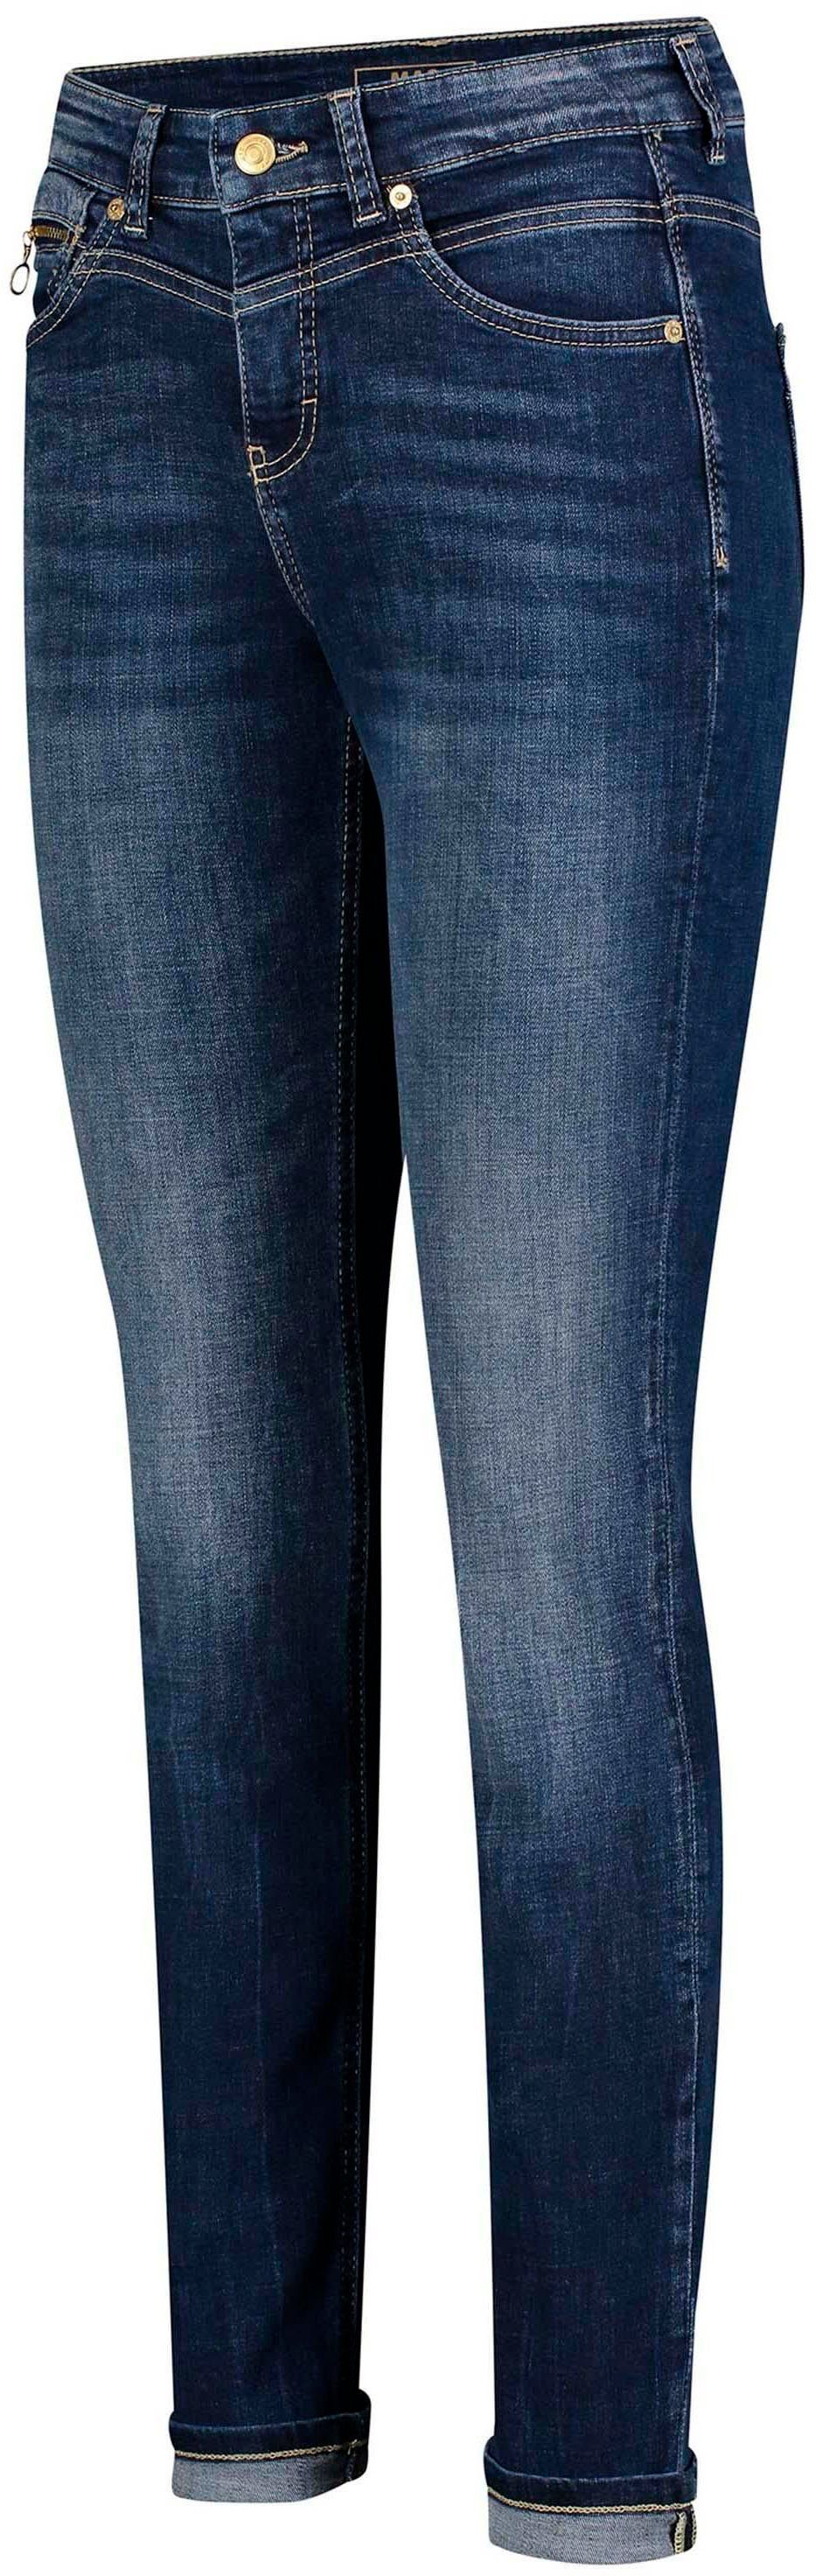 SLIM Slim-fit-Jeans MAC RICH